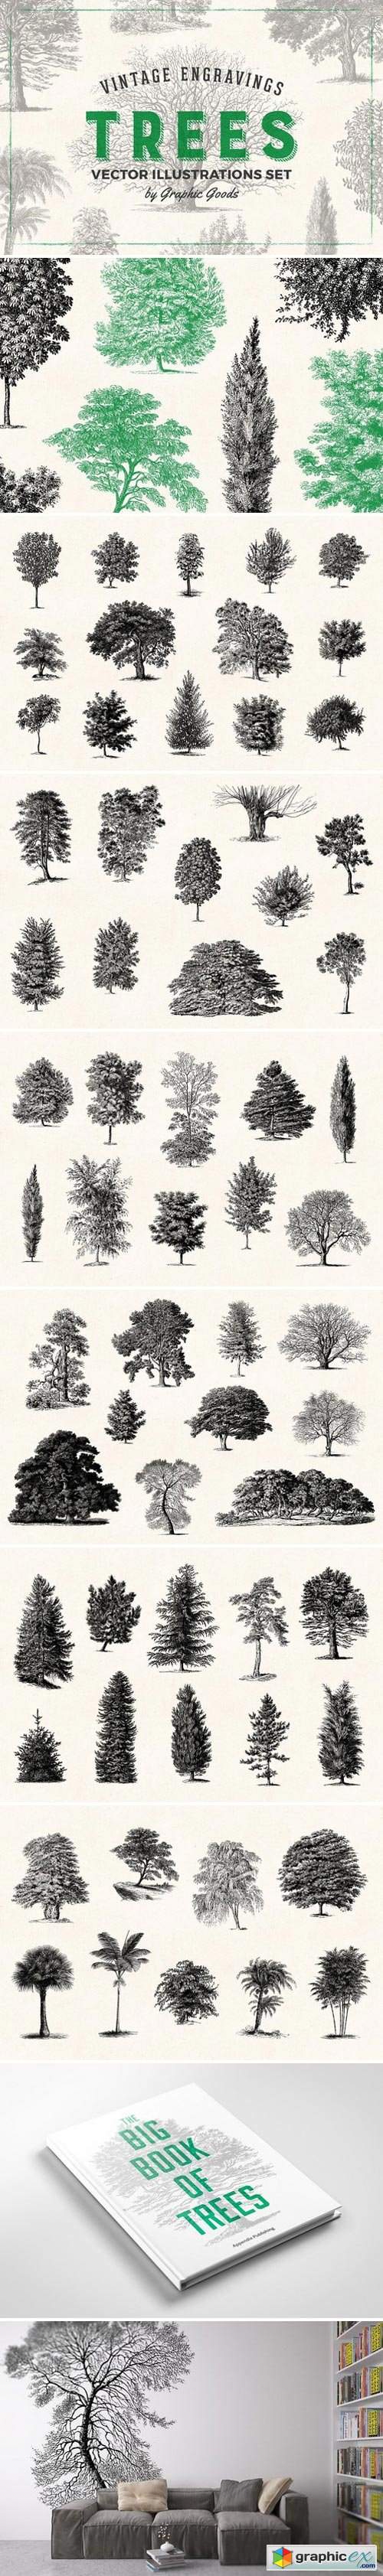 Trees - Vintage Illustrations Set